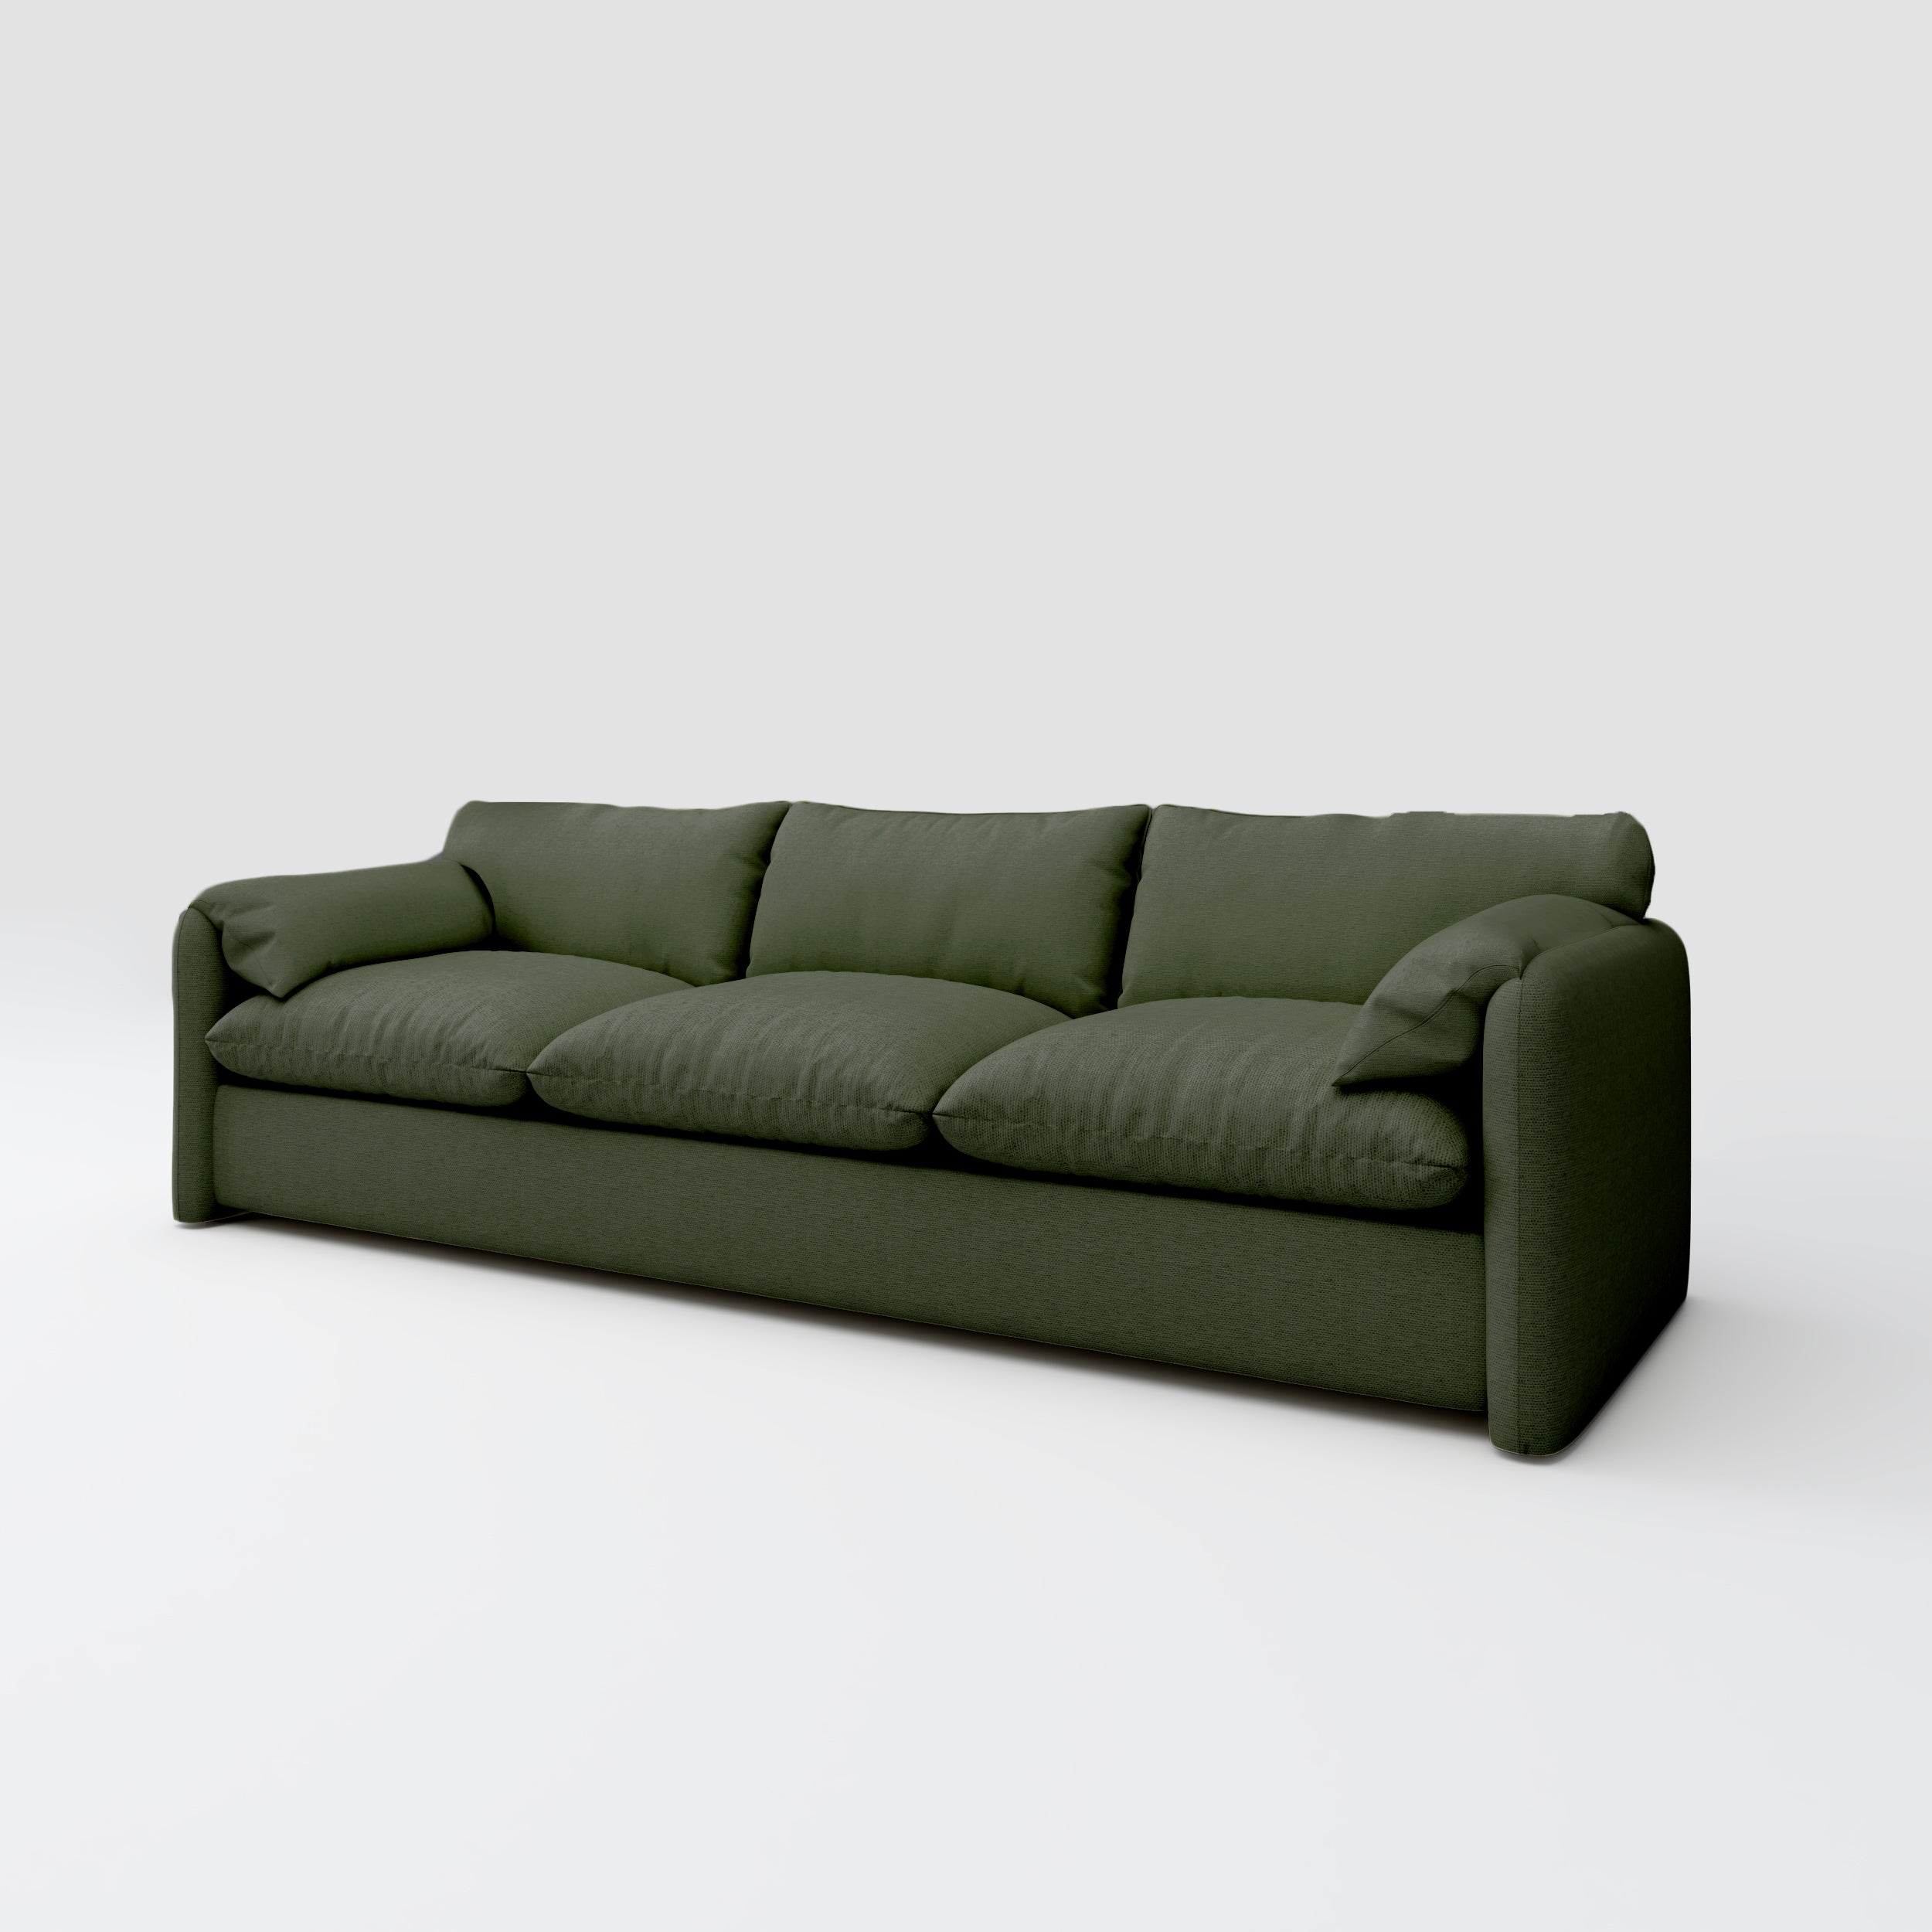 Ash 3 Seater Sofa